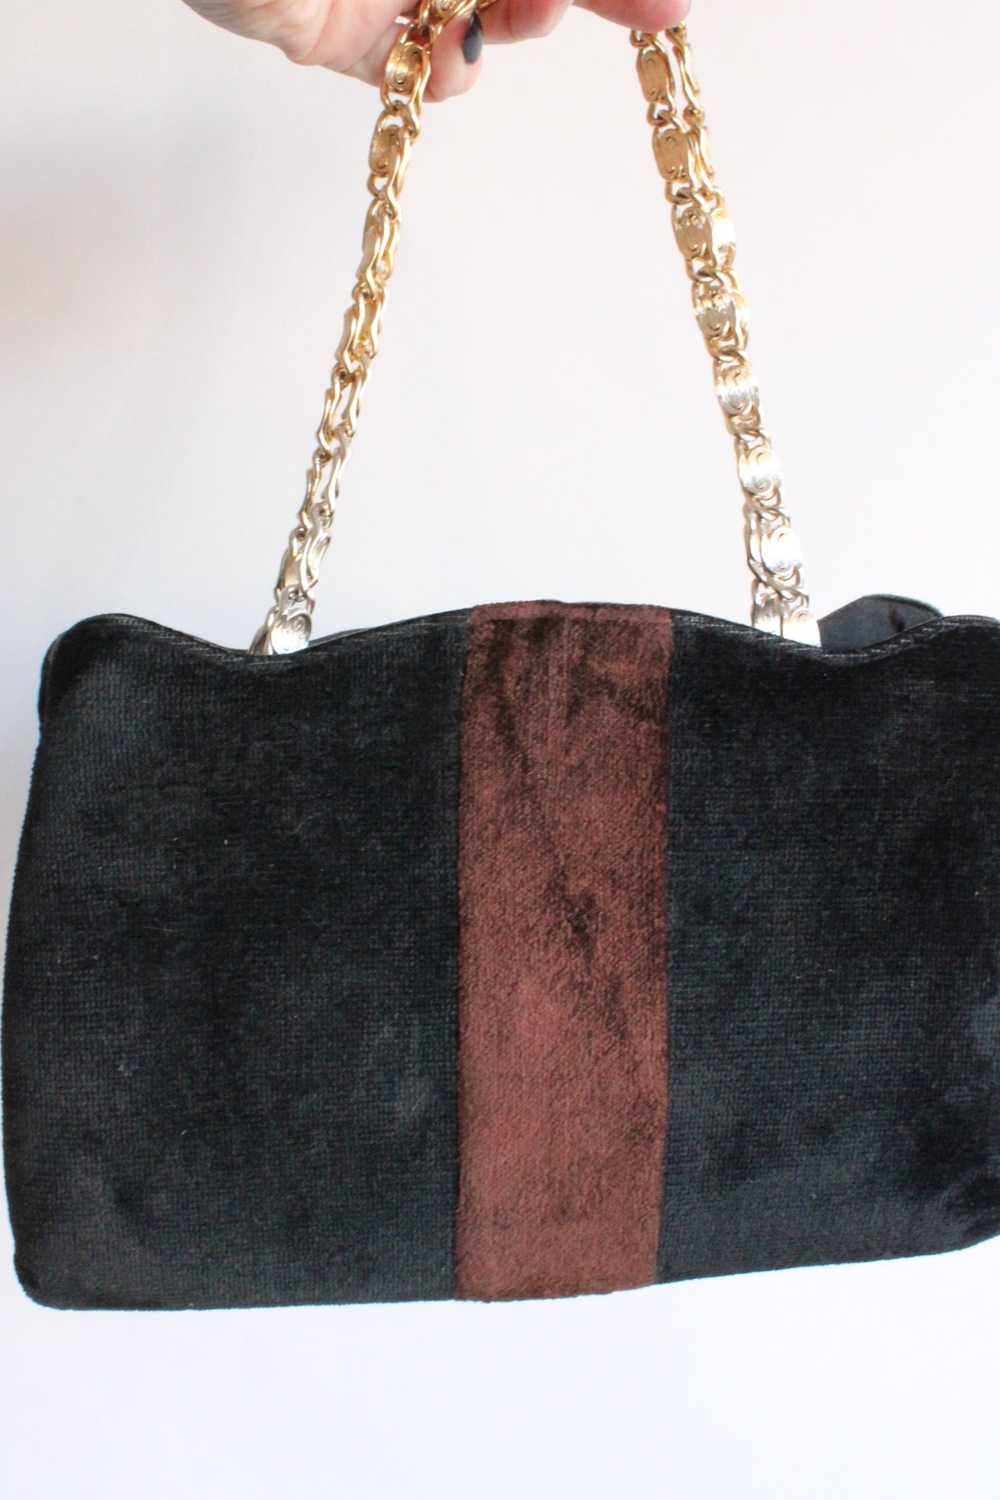 Vintage 1970s Black and Brown Velvet Handbag - image 4